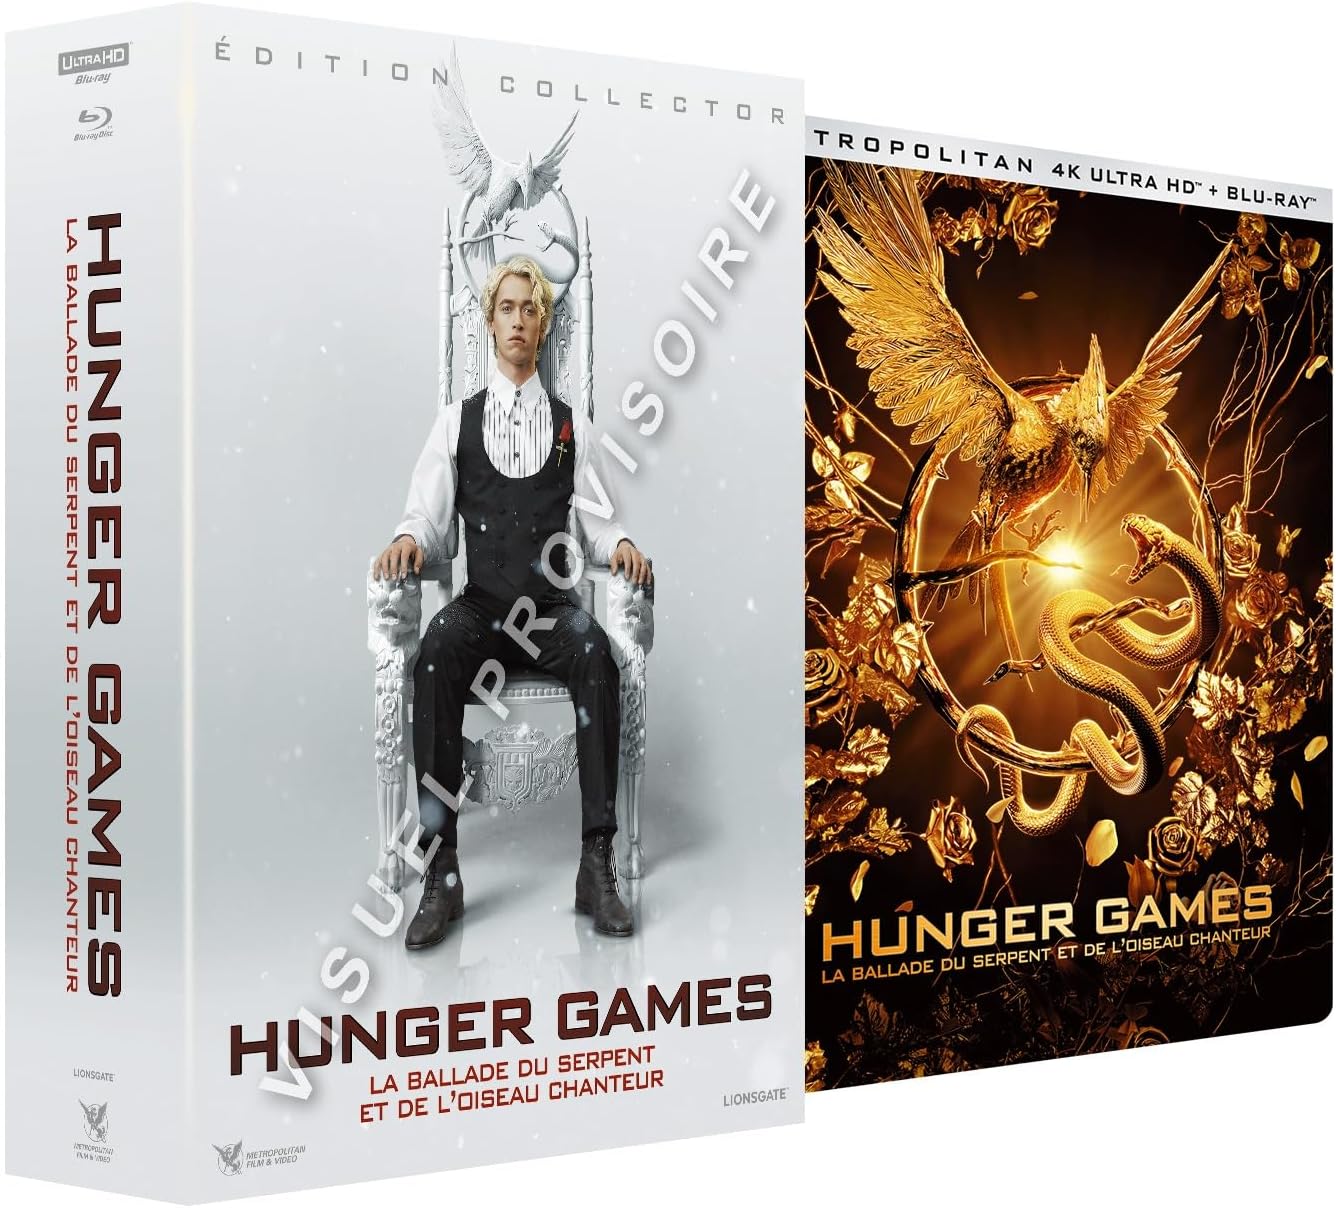 Hunger Games : que vaut le nouveau livre, préquel de la saga ? - Elle